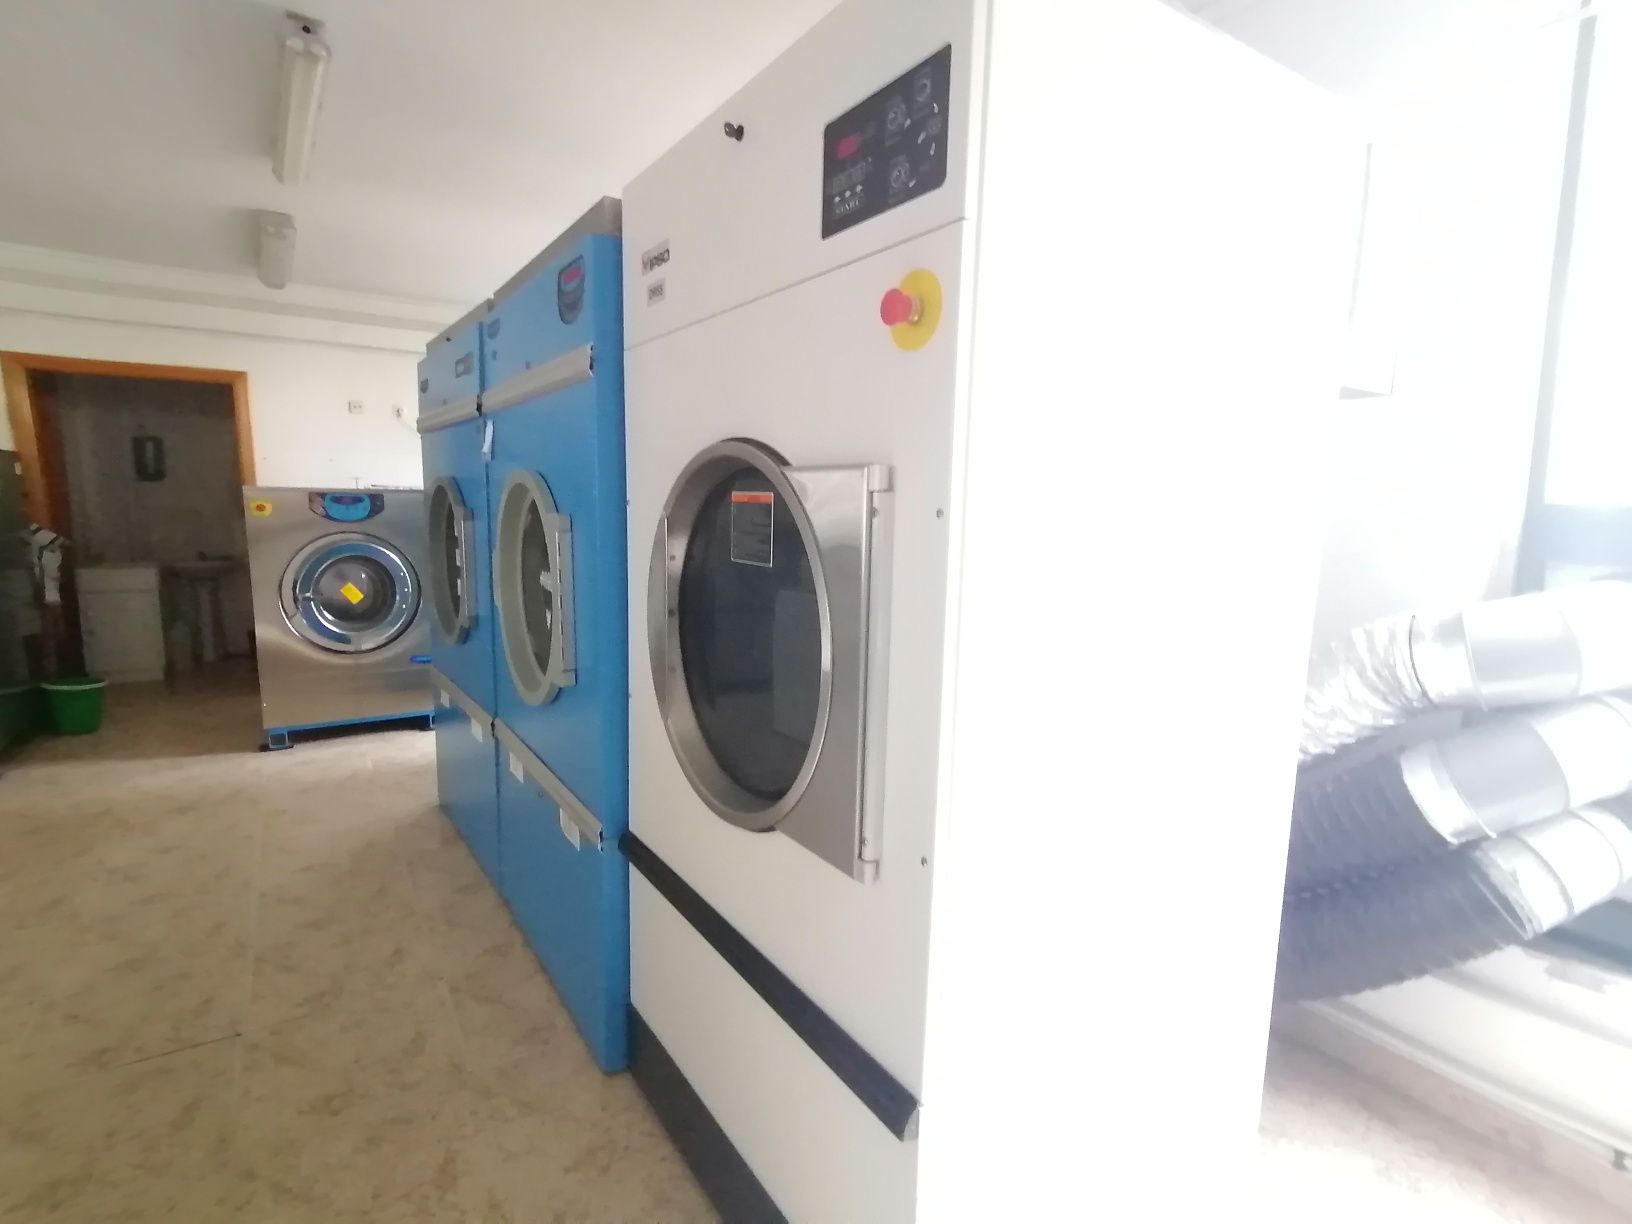 Self service lavandaria Líder de mercado em Portugal 28 dias montado